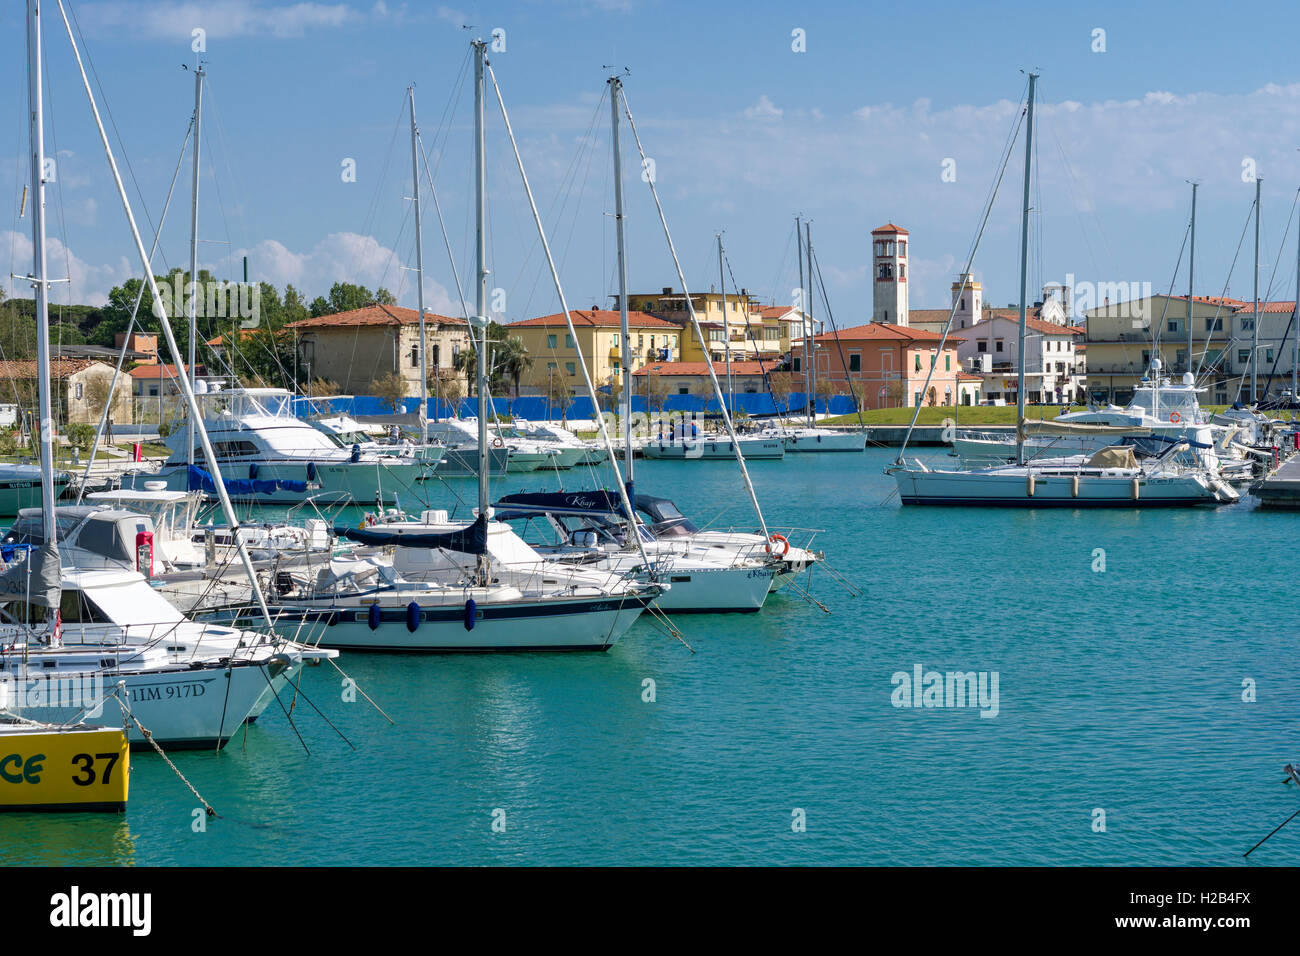 La voile et les bateaux à moteur sont ancrés dans le port, Marina di Pisa, Toscane, Italie Banque D'Images